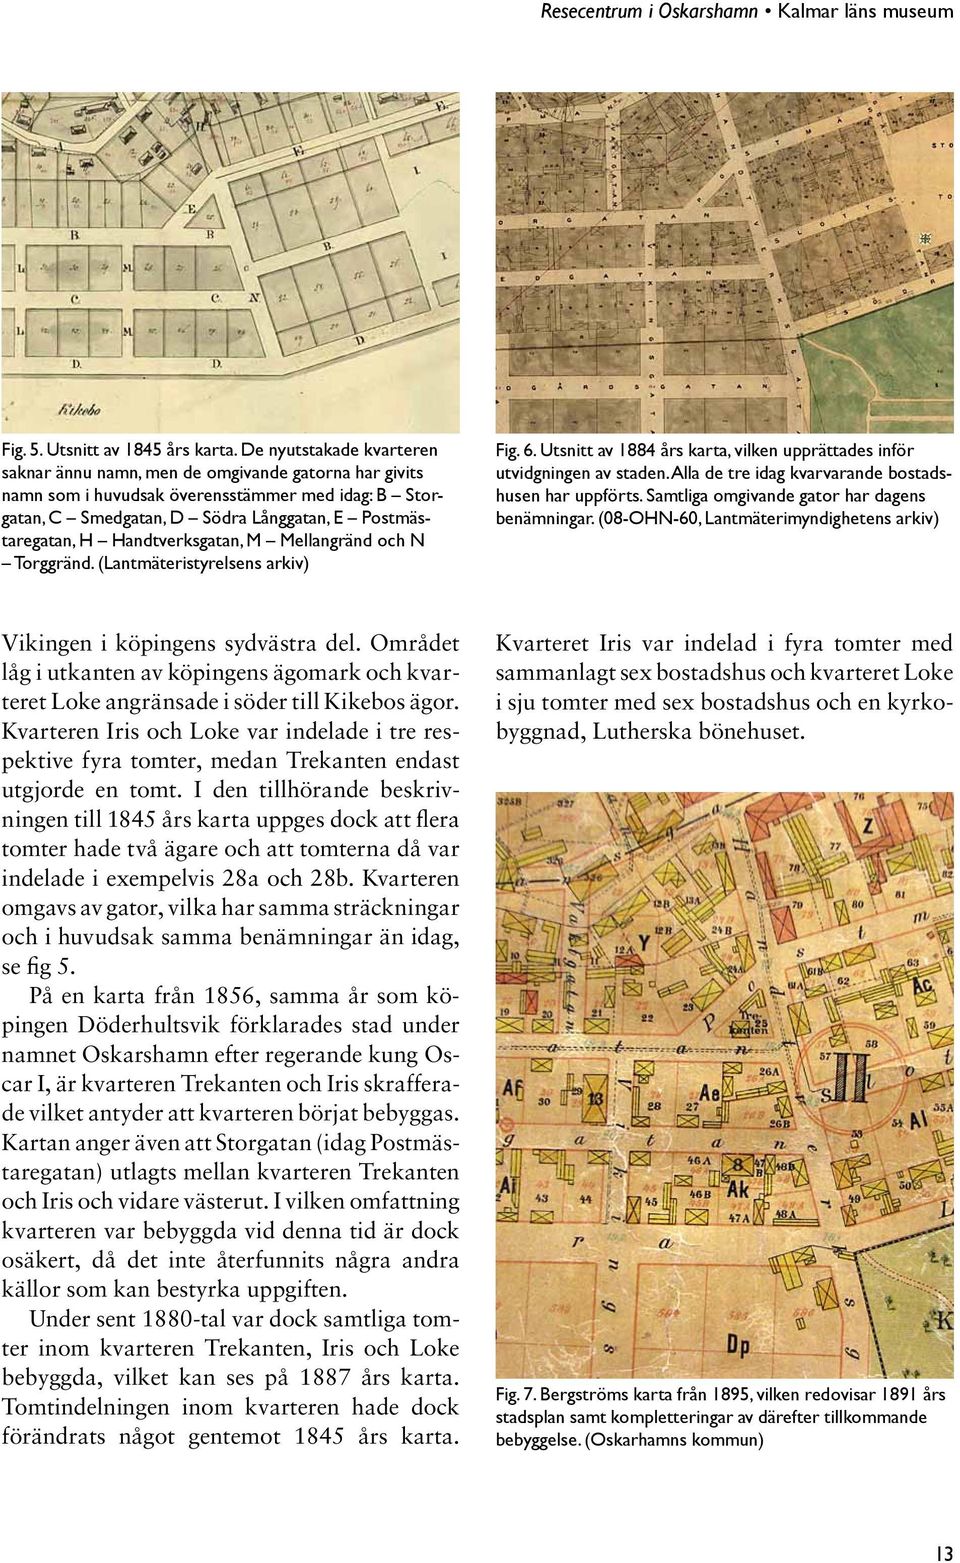 Handtverksgatan, M Mellangränd och N Torggränd. (Lantmäteristyrelsens arkiv) Fig. 6. Utsnitt av 1884 års karta, vilken upprättades inför utvidgningen av staden.